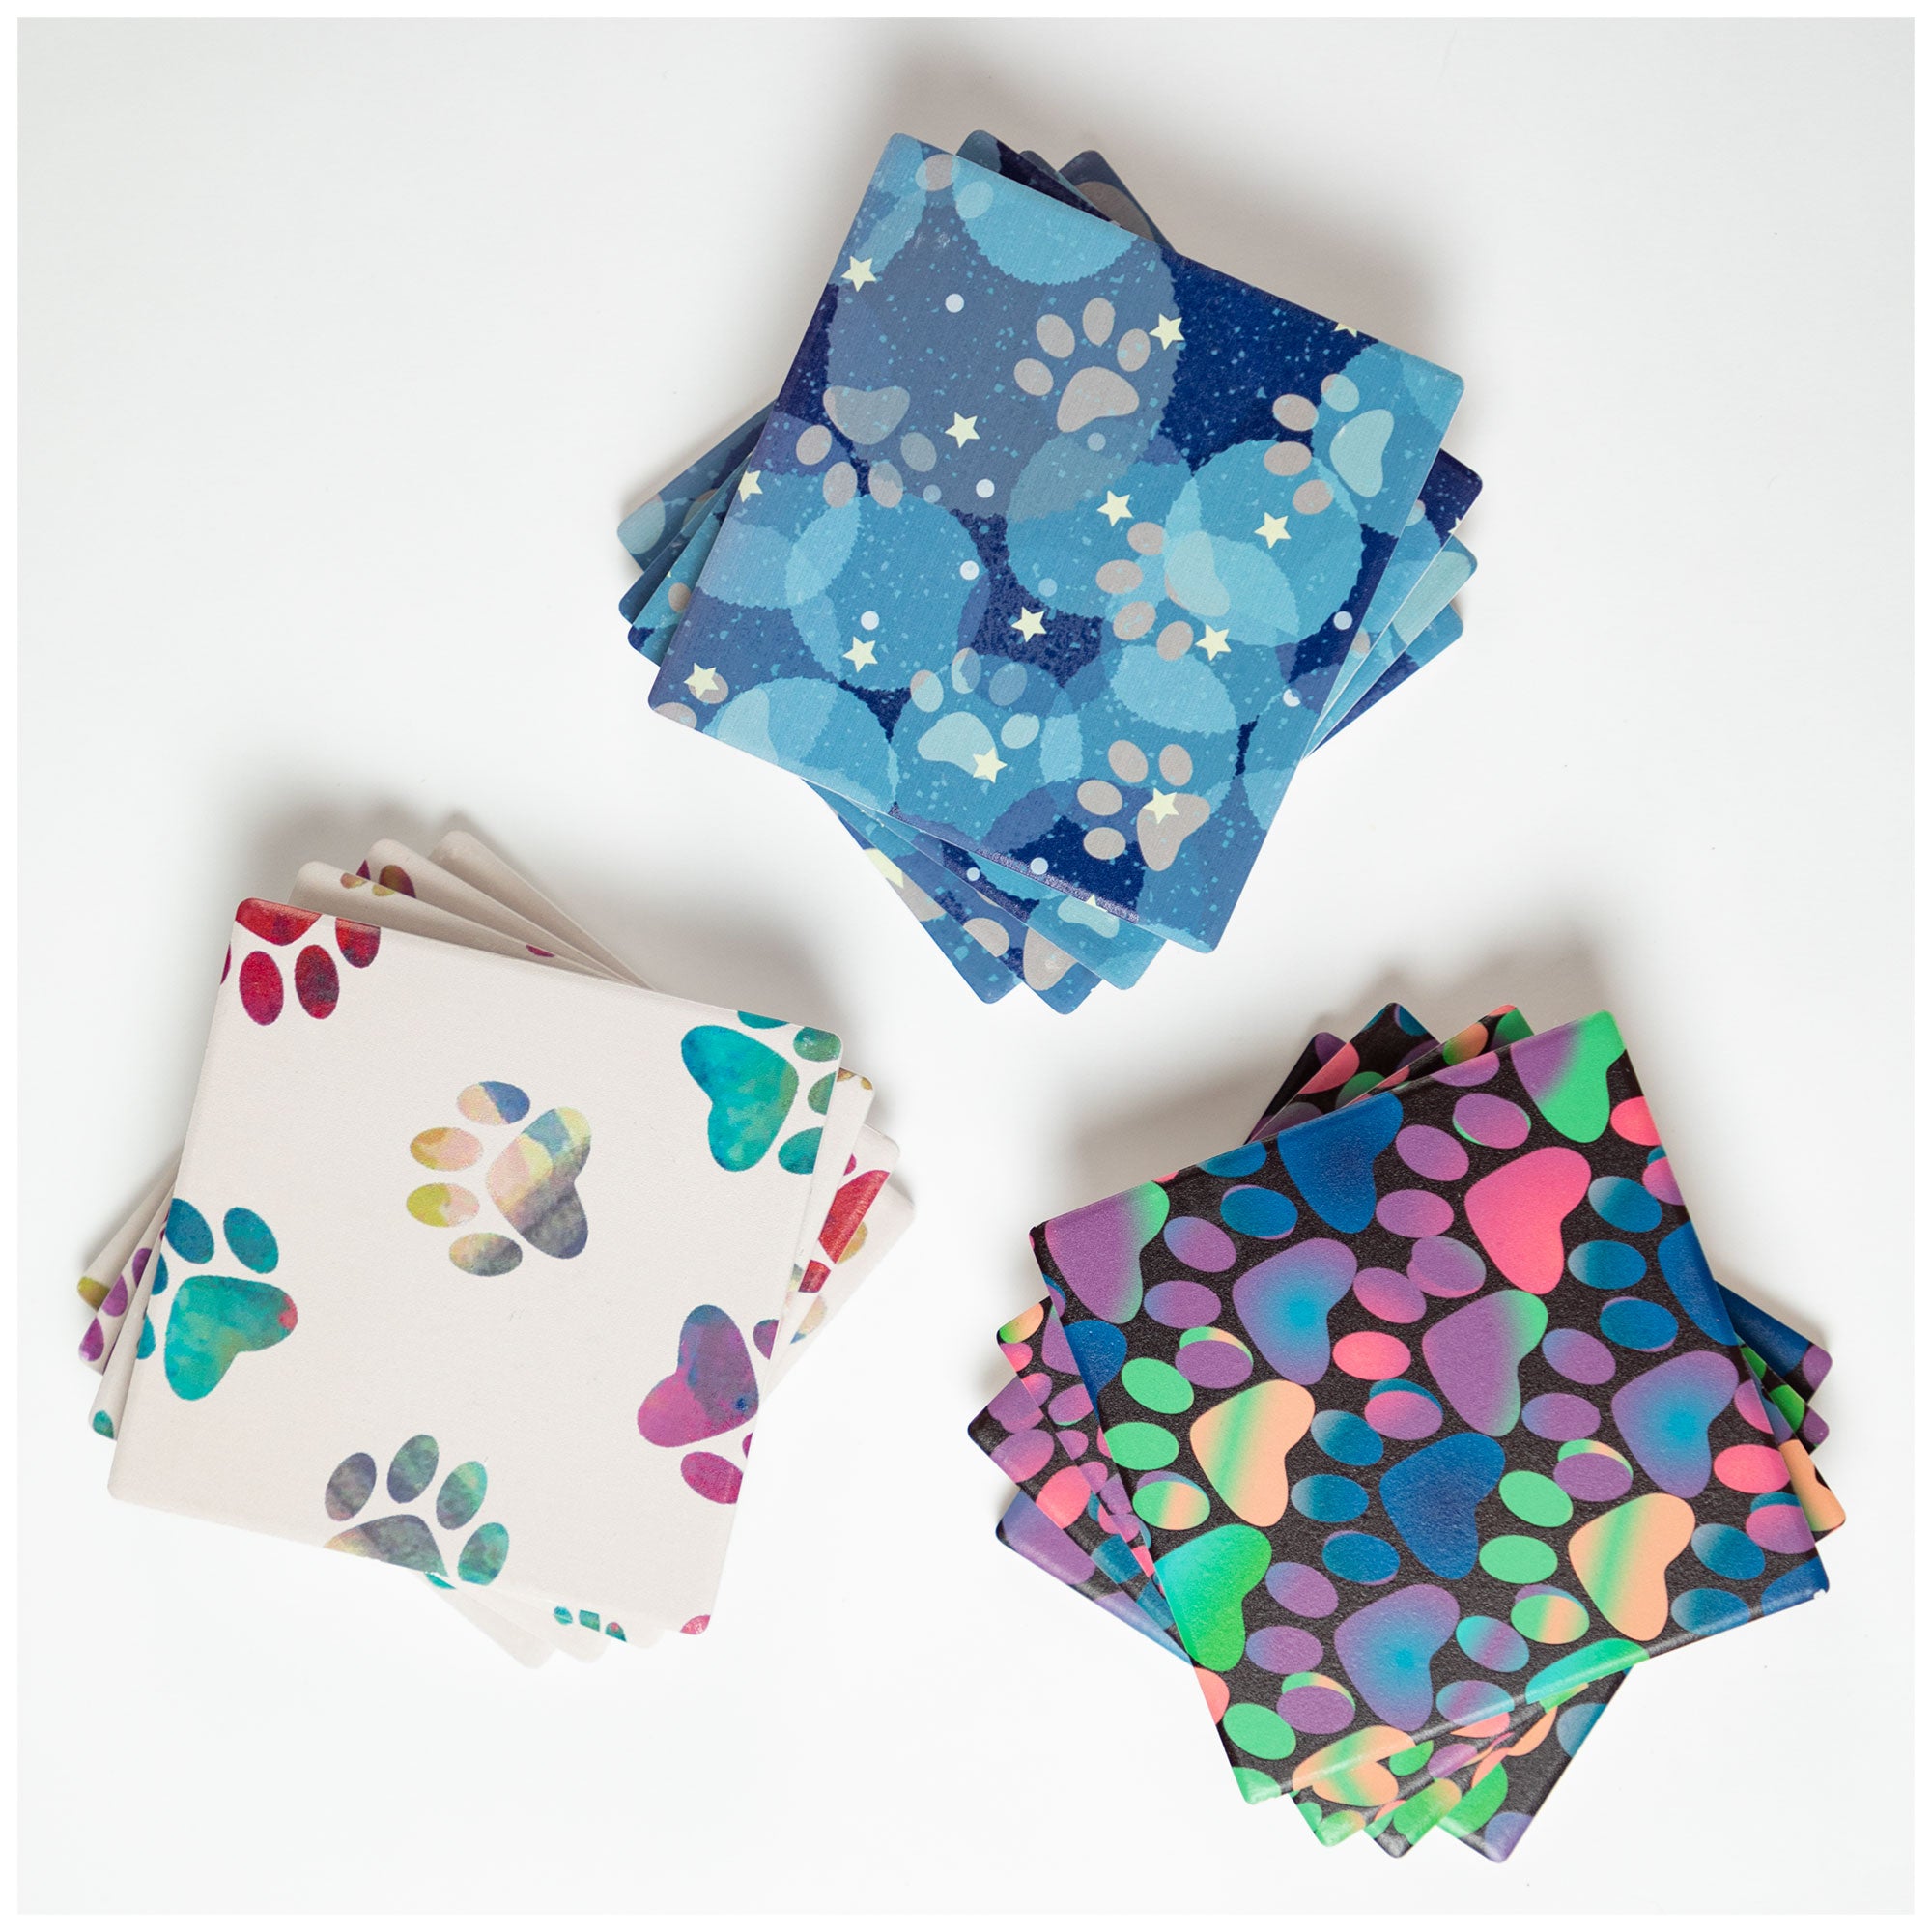 Paw Print Coaster - Set Of 4 - Vibrant Pastel Paws